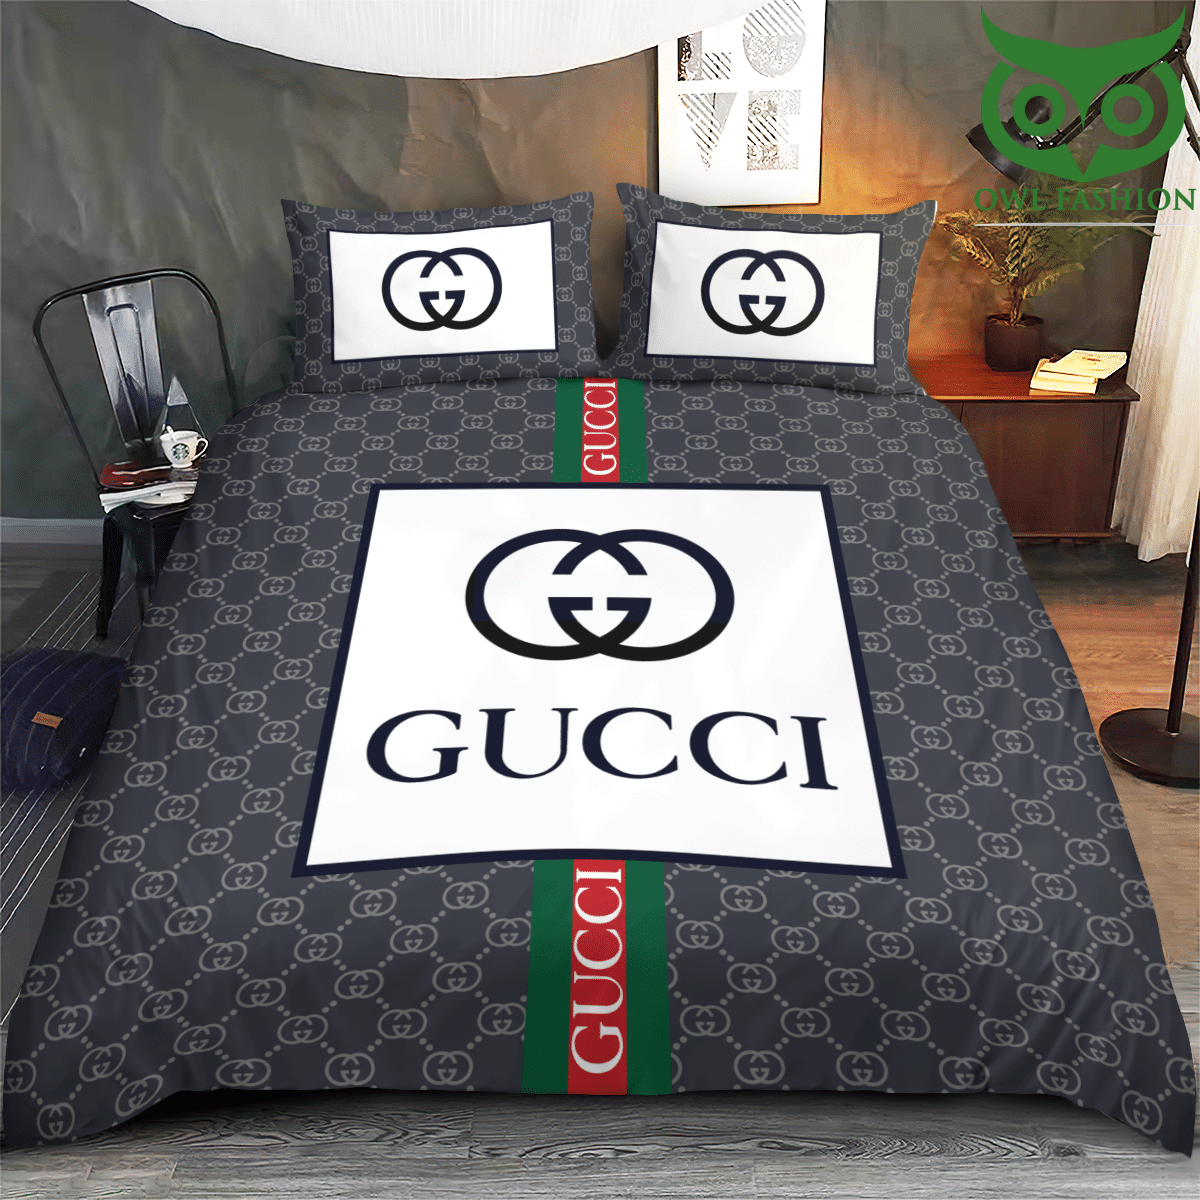 119 Gucci Grey tone luxury bedding set